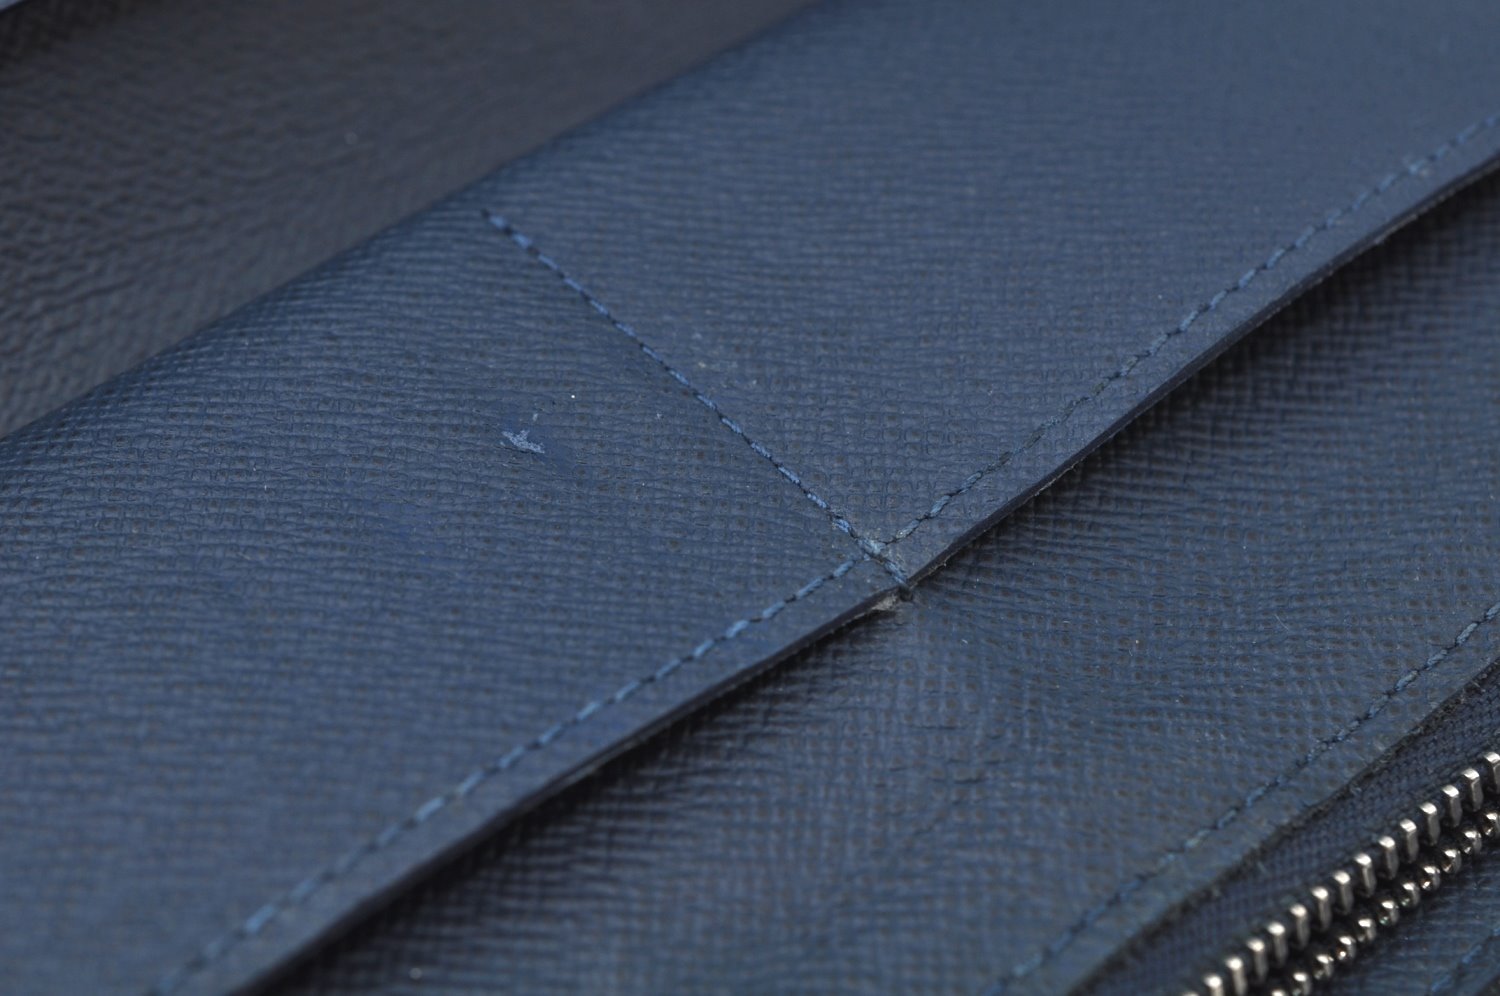 Authentic Louis Vuitton Taiga Zippy Wallet Vertical Blue Black M30070 LV 9567I